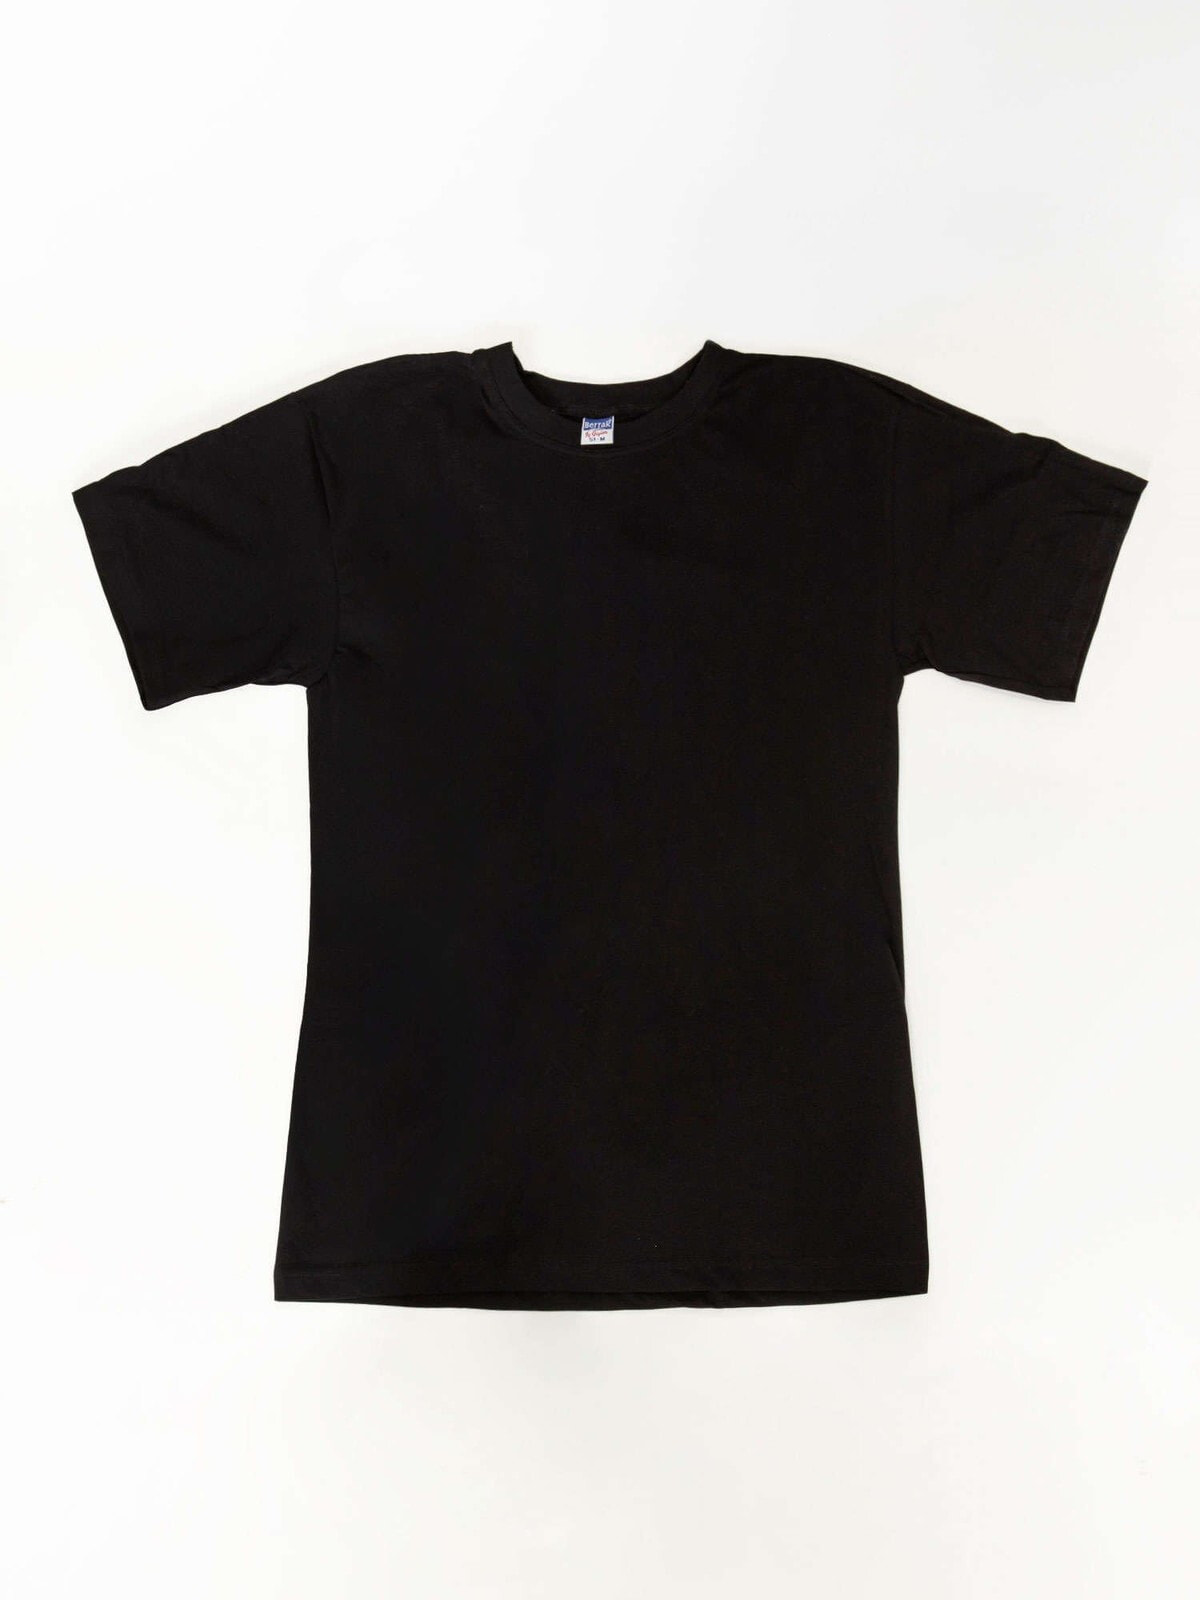 Мужская футболка повседневная черная однотонная Factory Price T-shirt-BR-TS-1005.30-czarny